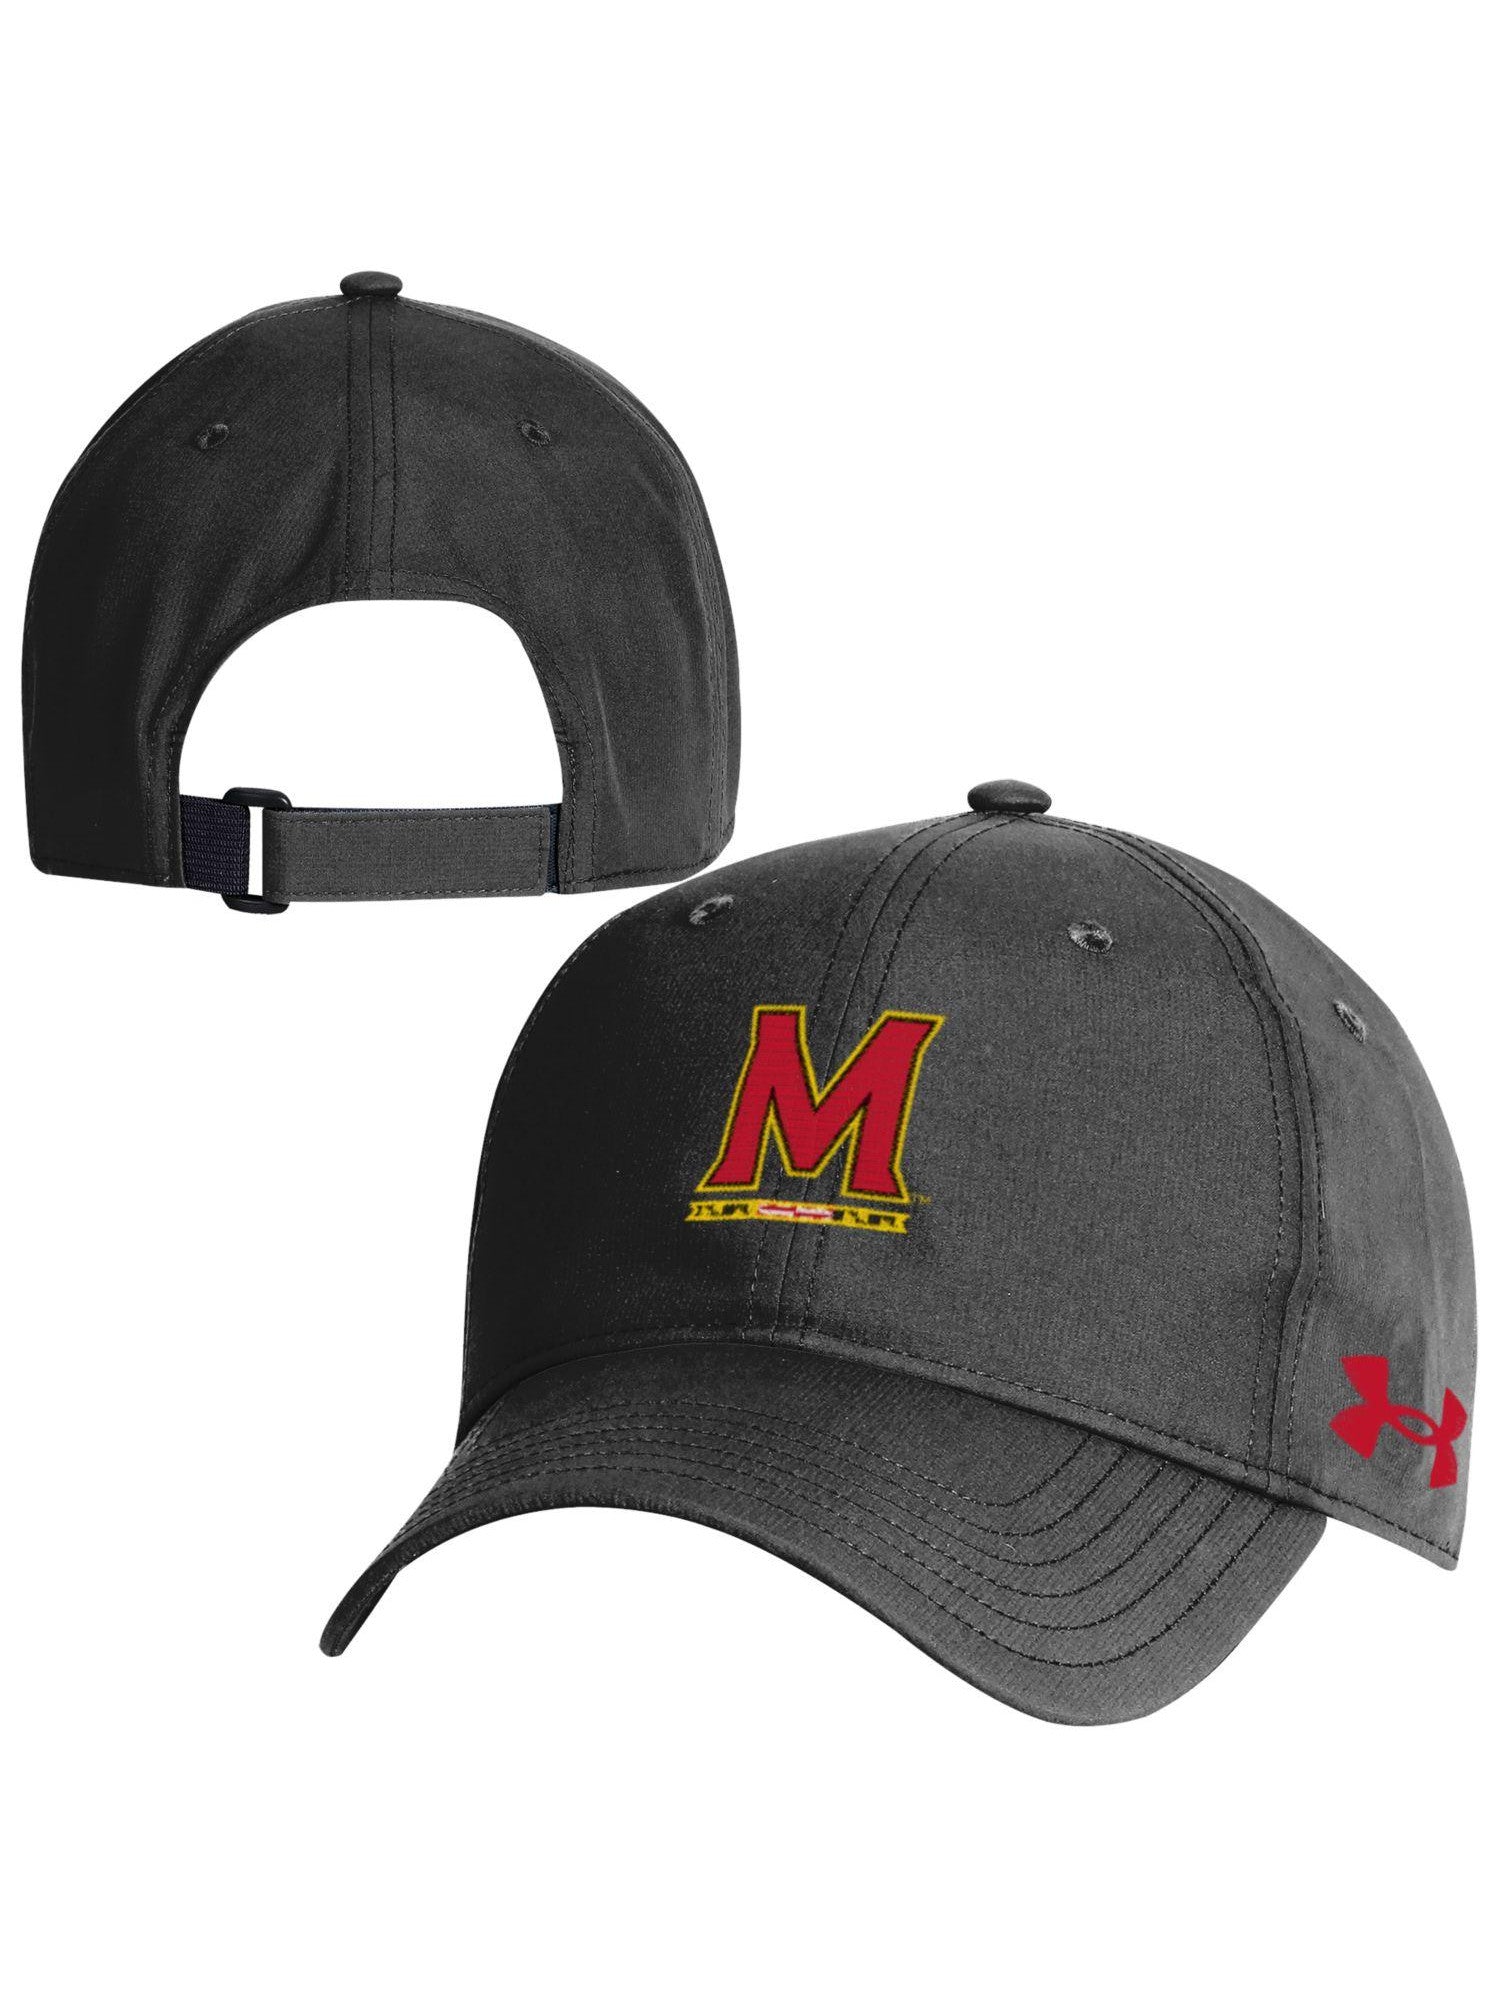 Under Armor University Cap of Baseball Maryland Gifts – Maryland (Black)